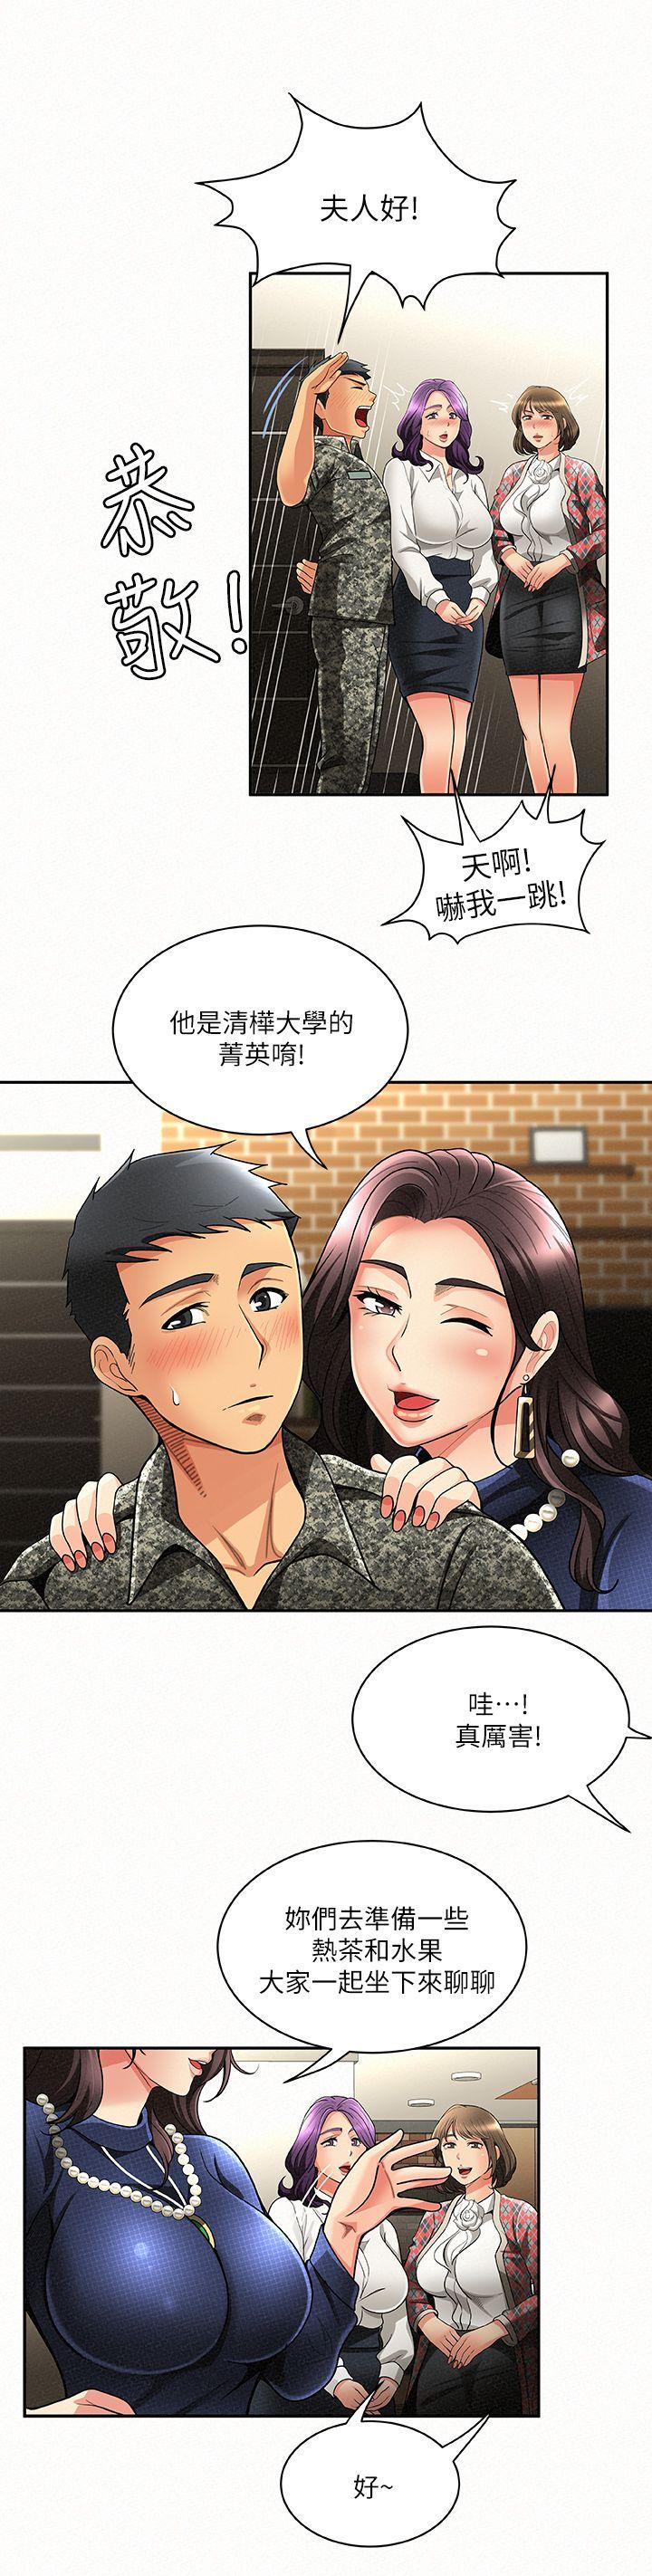 韩国污漫画 報告夫人 第3话-想不想嚐嚐其他有夫之妇? 4